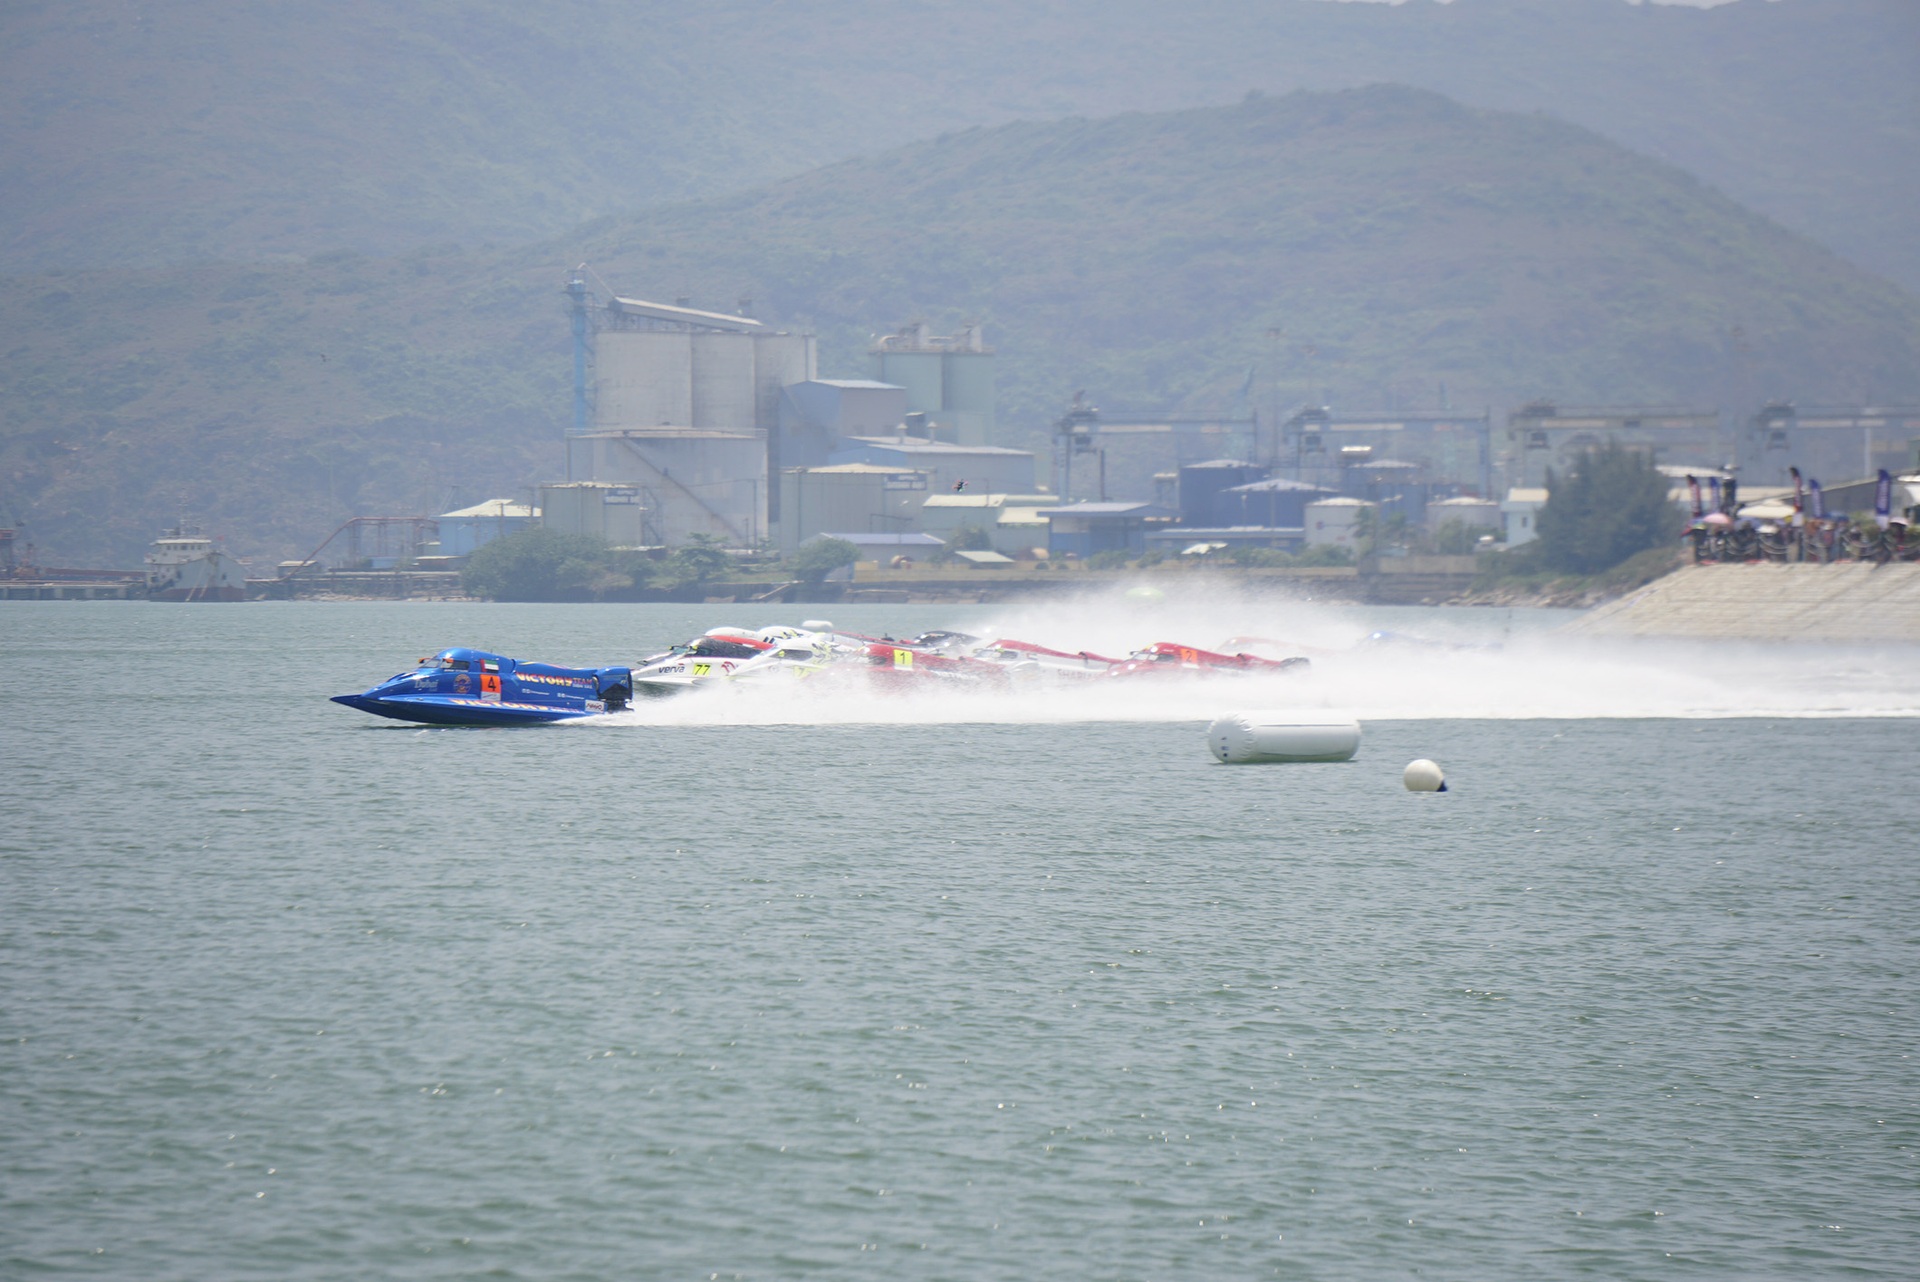 Tay đua Bình Định dừng cuộc chơi sớm ở vòng chung kết giải thuyền máy nhà nghề - 7